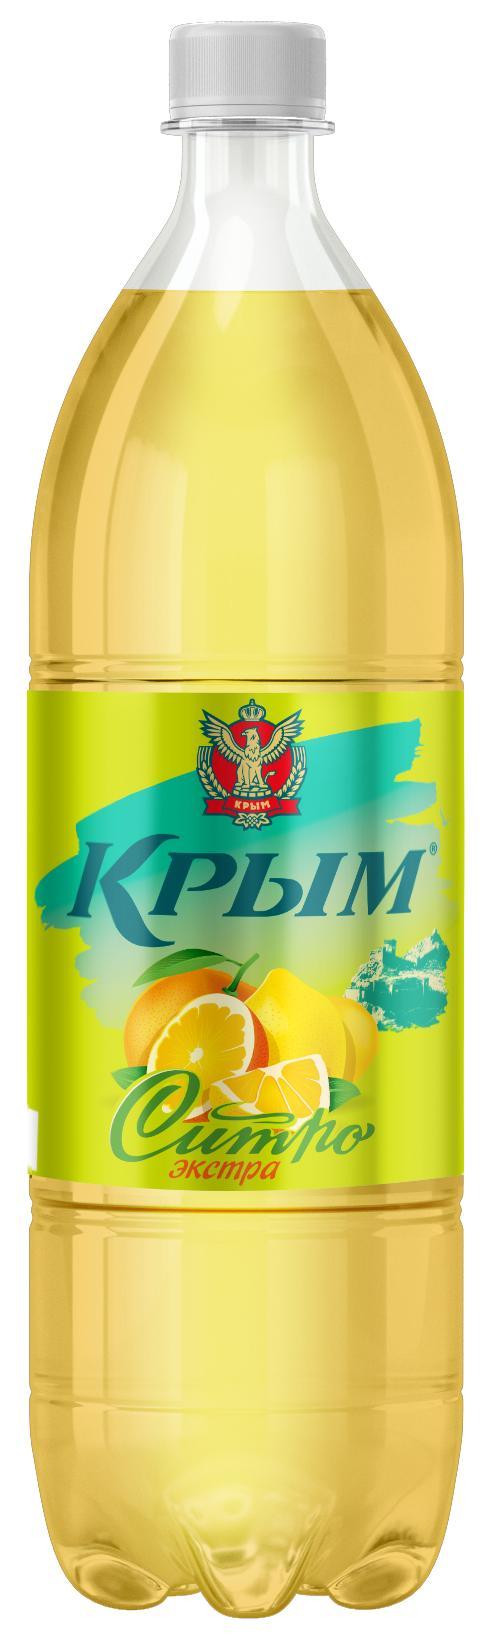 Газированный напиток Крым Ситро-экстра